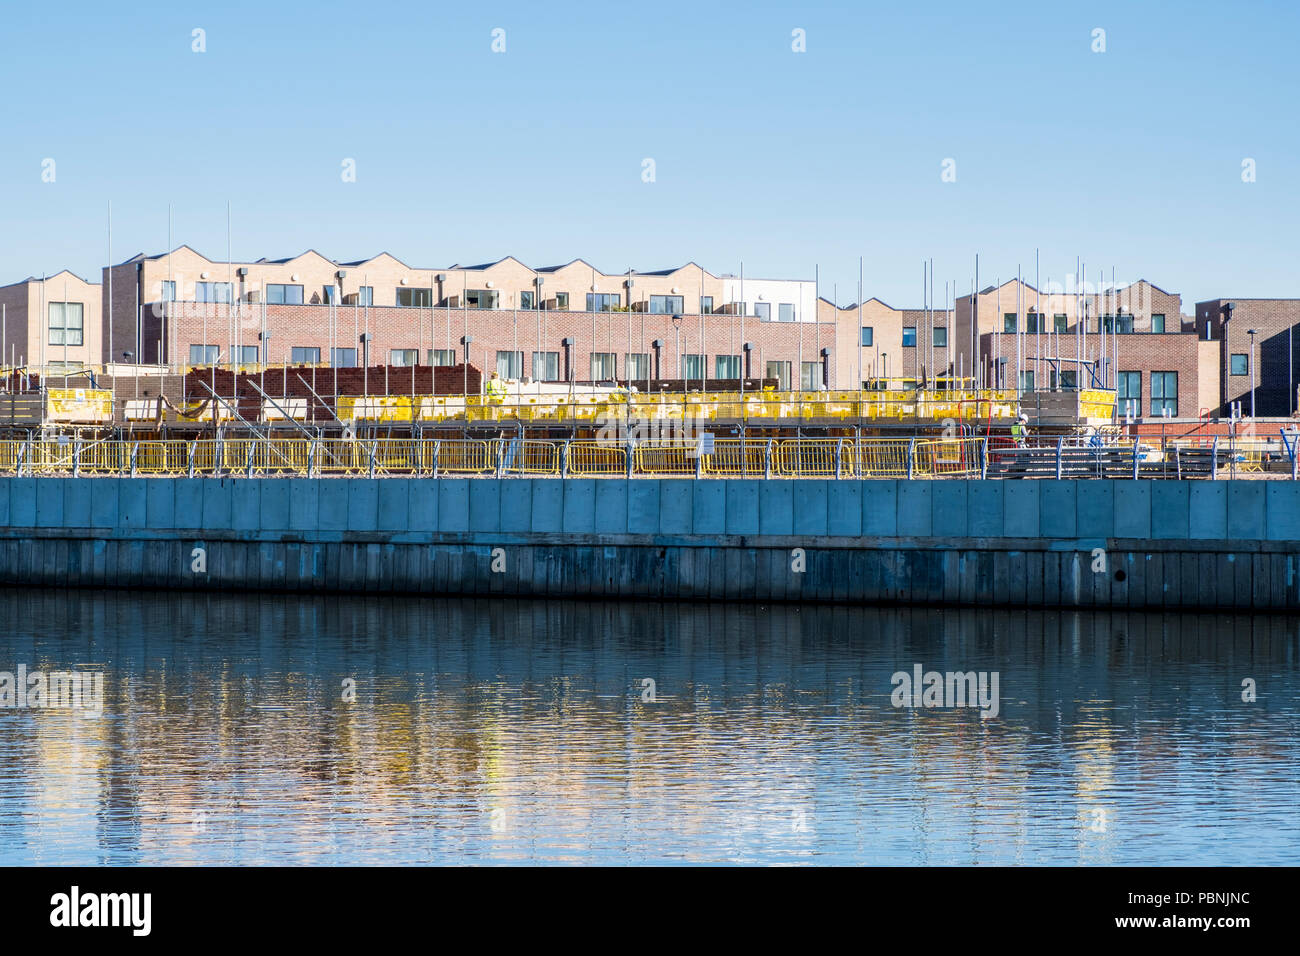 Waterfront e sviluppo. La costruzione di abitazioni site la costruzione di nuove case e appartamenti dal fiume Trent, Trento Bacino, Nottingham, Inghilterra, Regno Unito Foto Stock